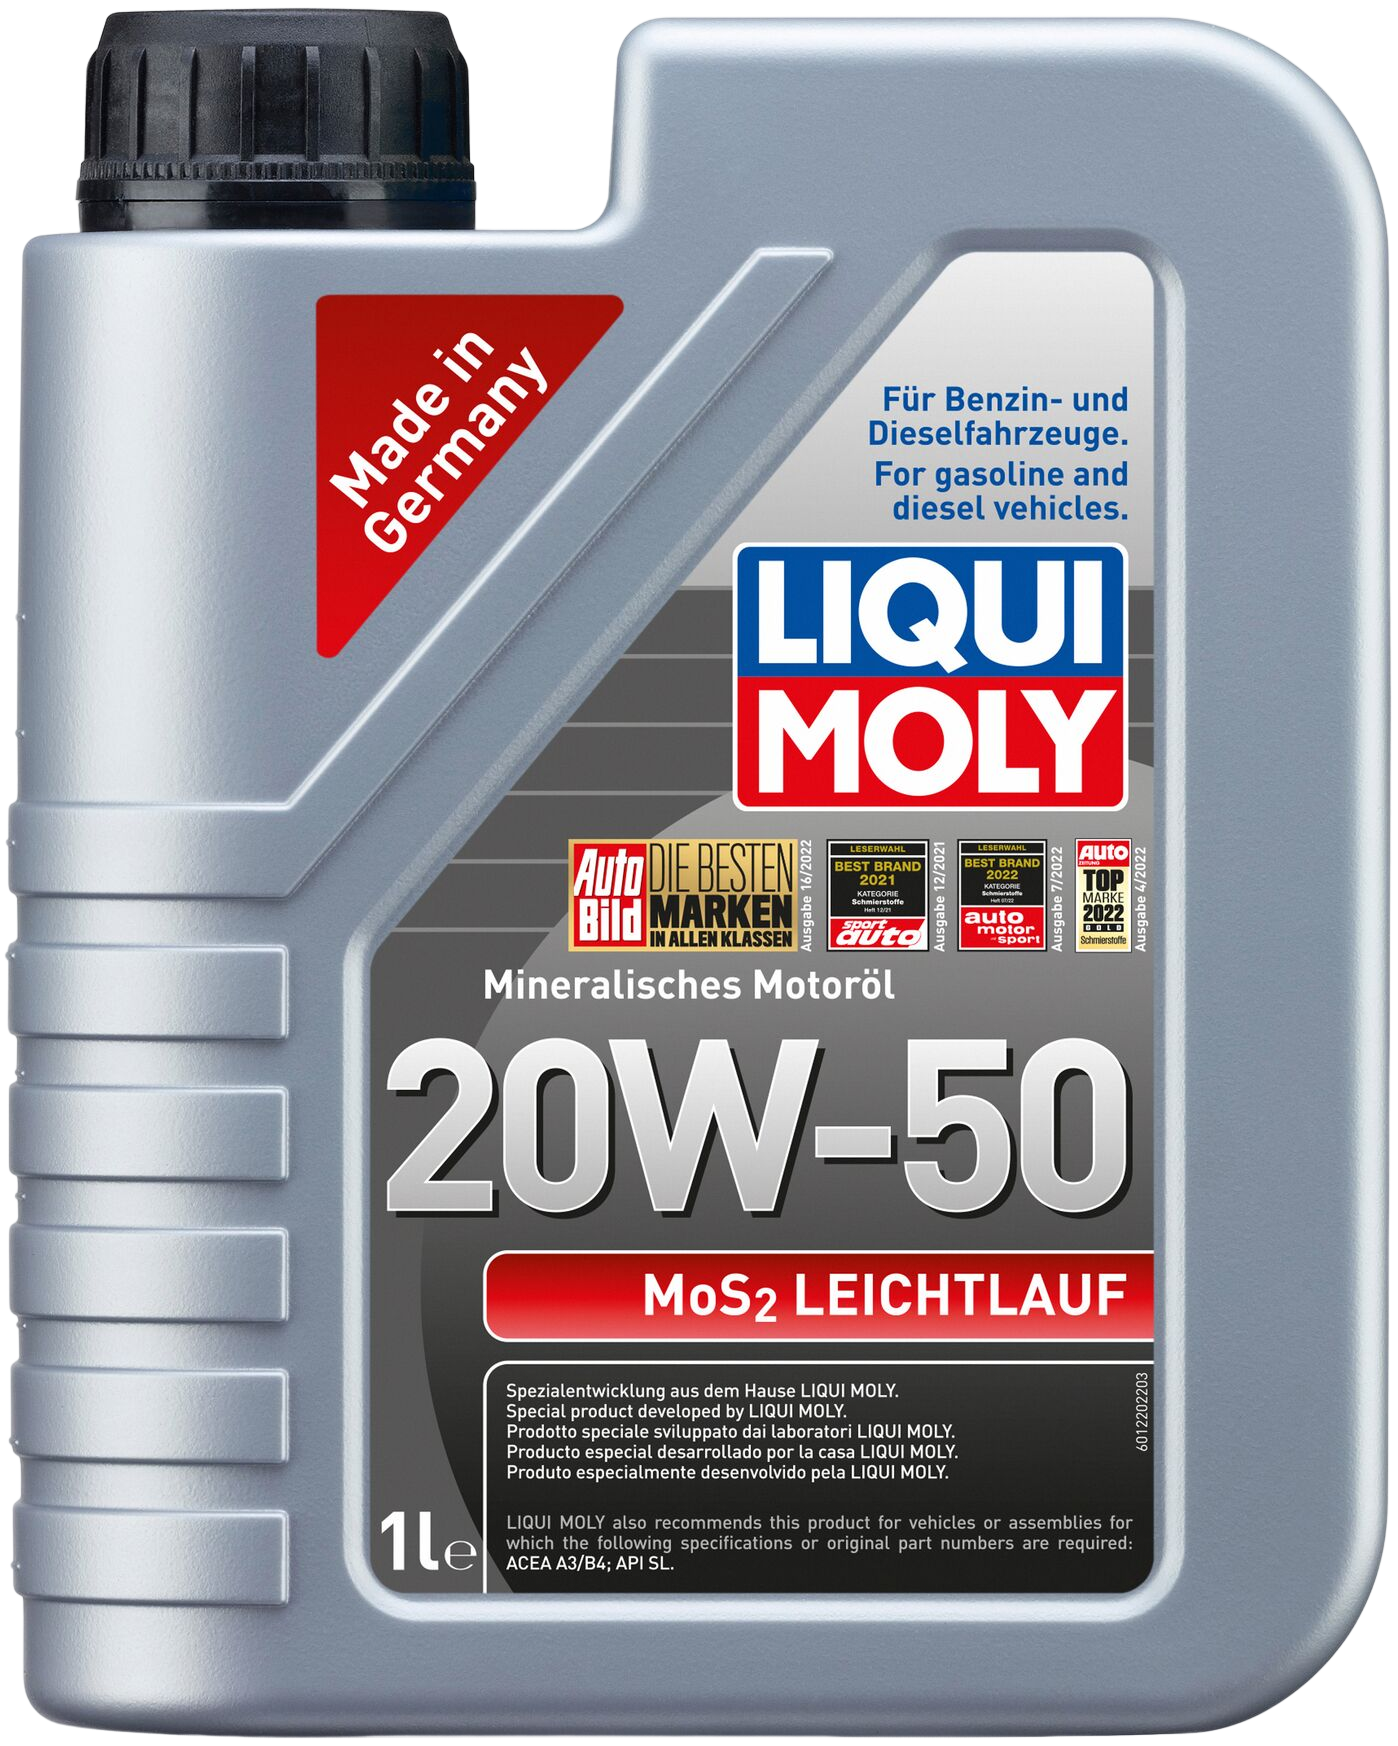 Liqui Moly MoS2 Leichtlauf 20W-50, 1 lt